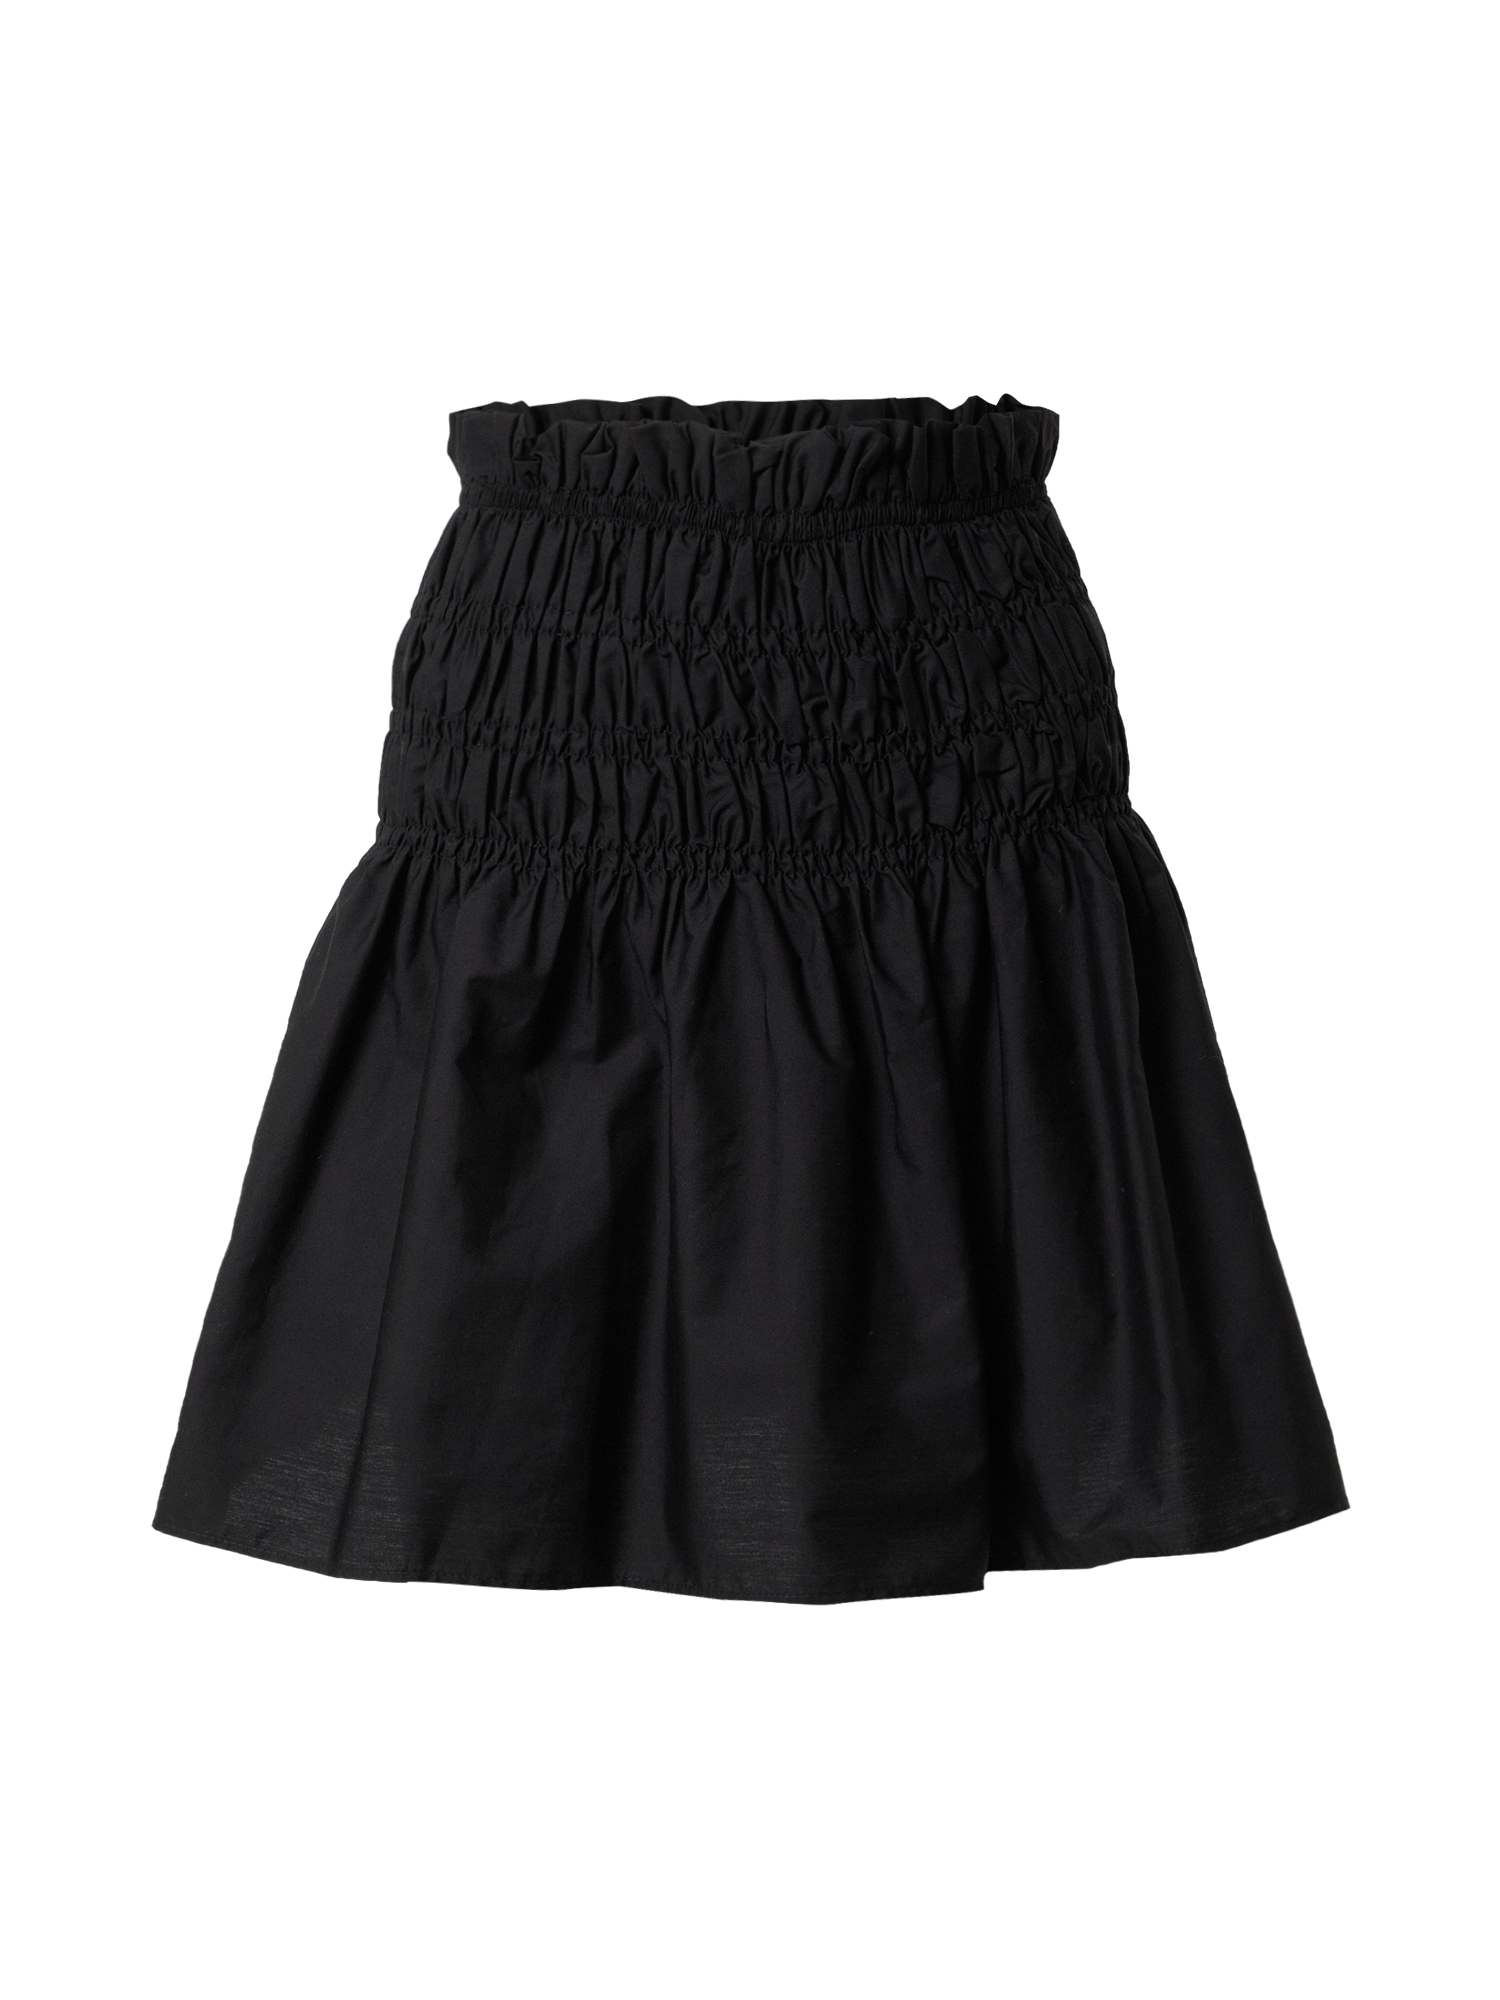 Kobiety Odzież Moves Spódnica Mimaja w kolorze Czarnym 